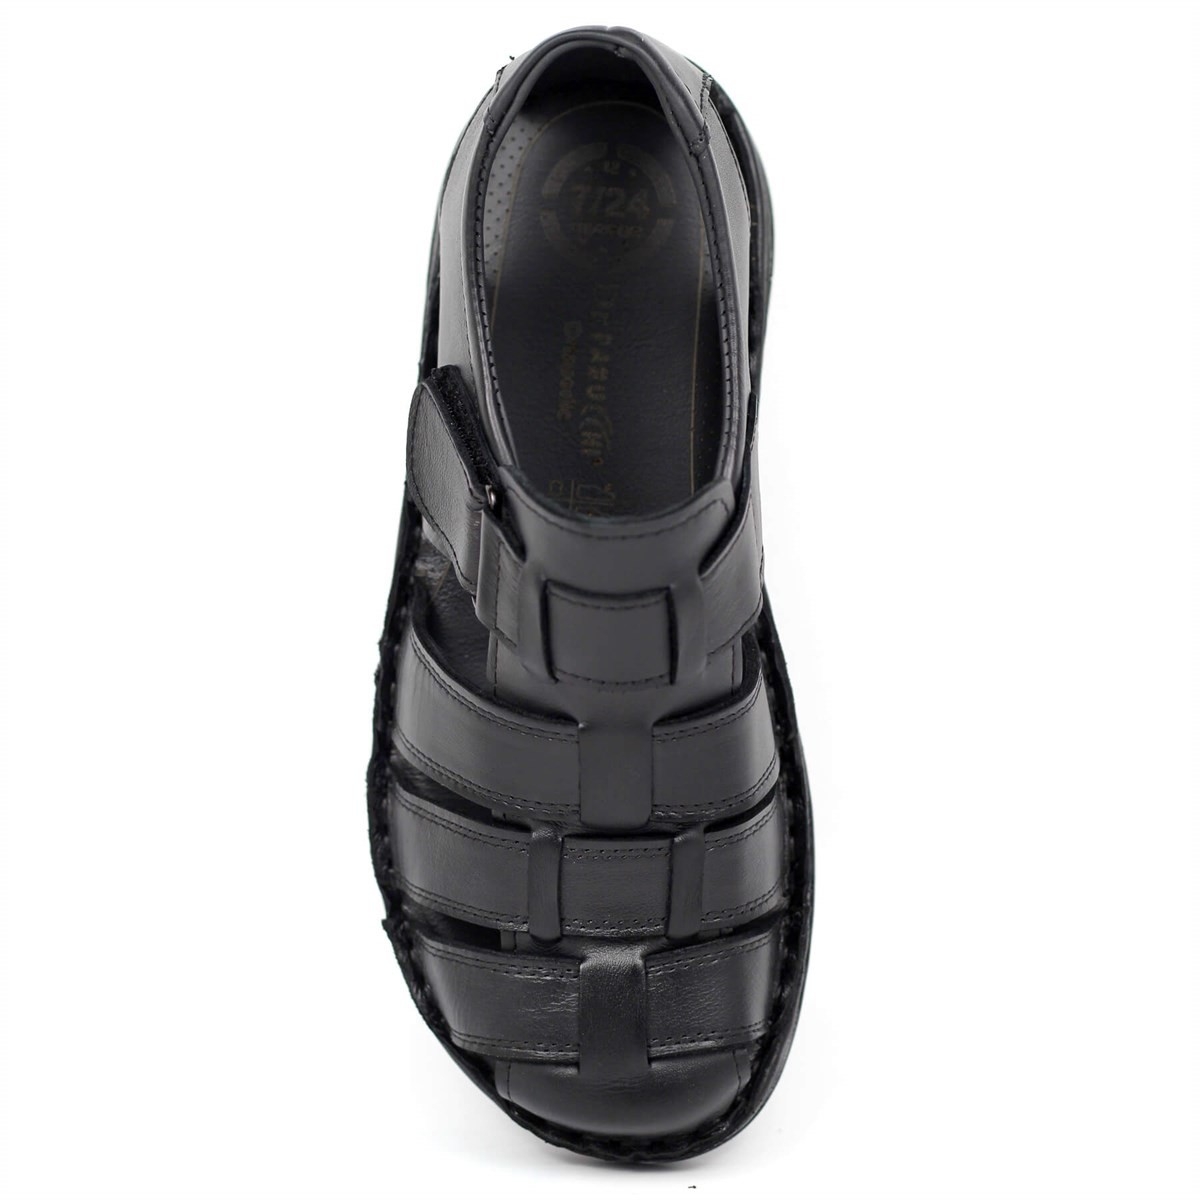 Flo Dr. Pabucchi Hakiki Deri Comfort Sandalet Erkek Siyah 0001. 3